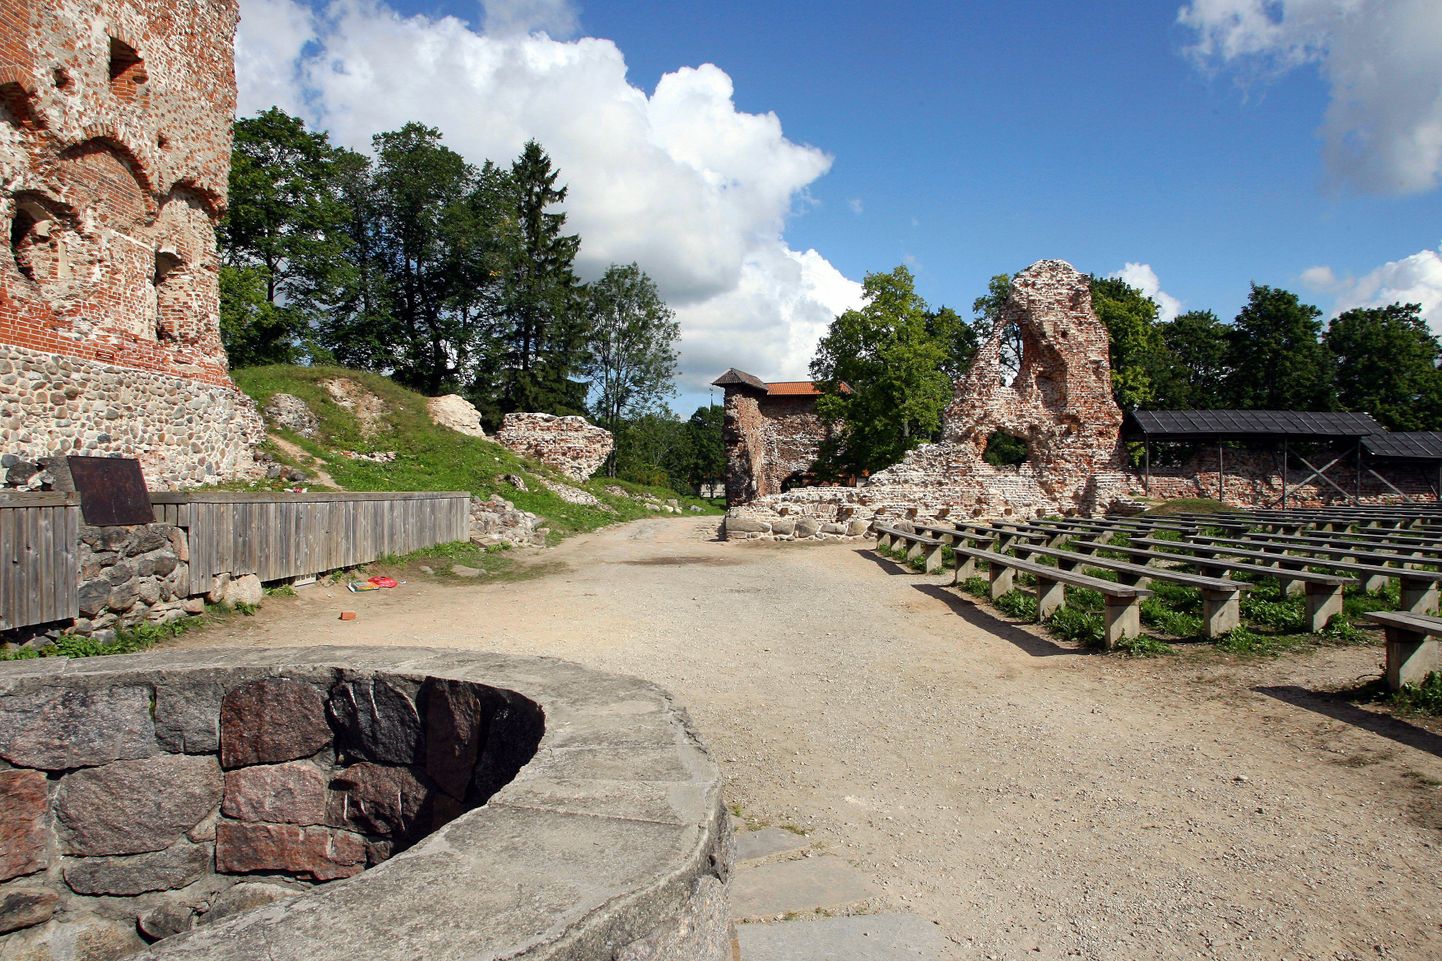 Suvel toob Ugala lossimägedes vaatajate ette "Viimsest reliikviast" inspireeritud suvelavastuse.